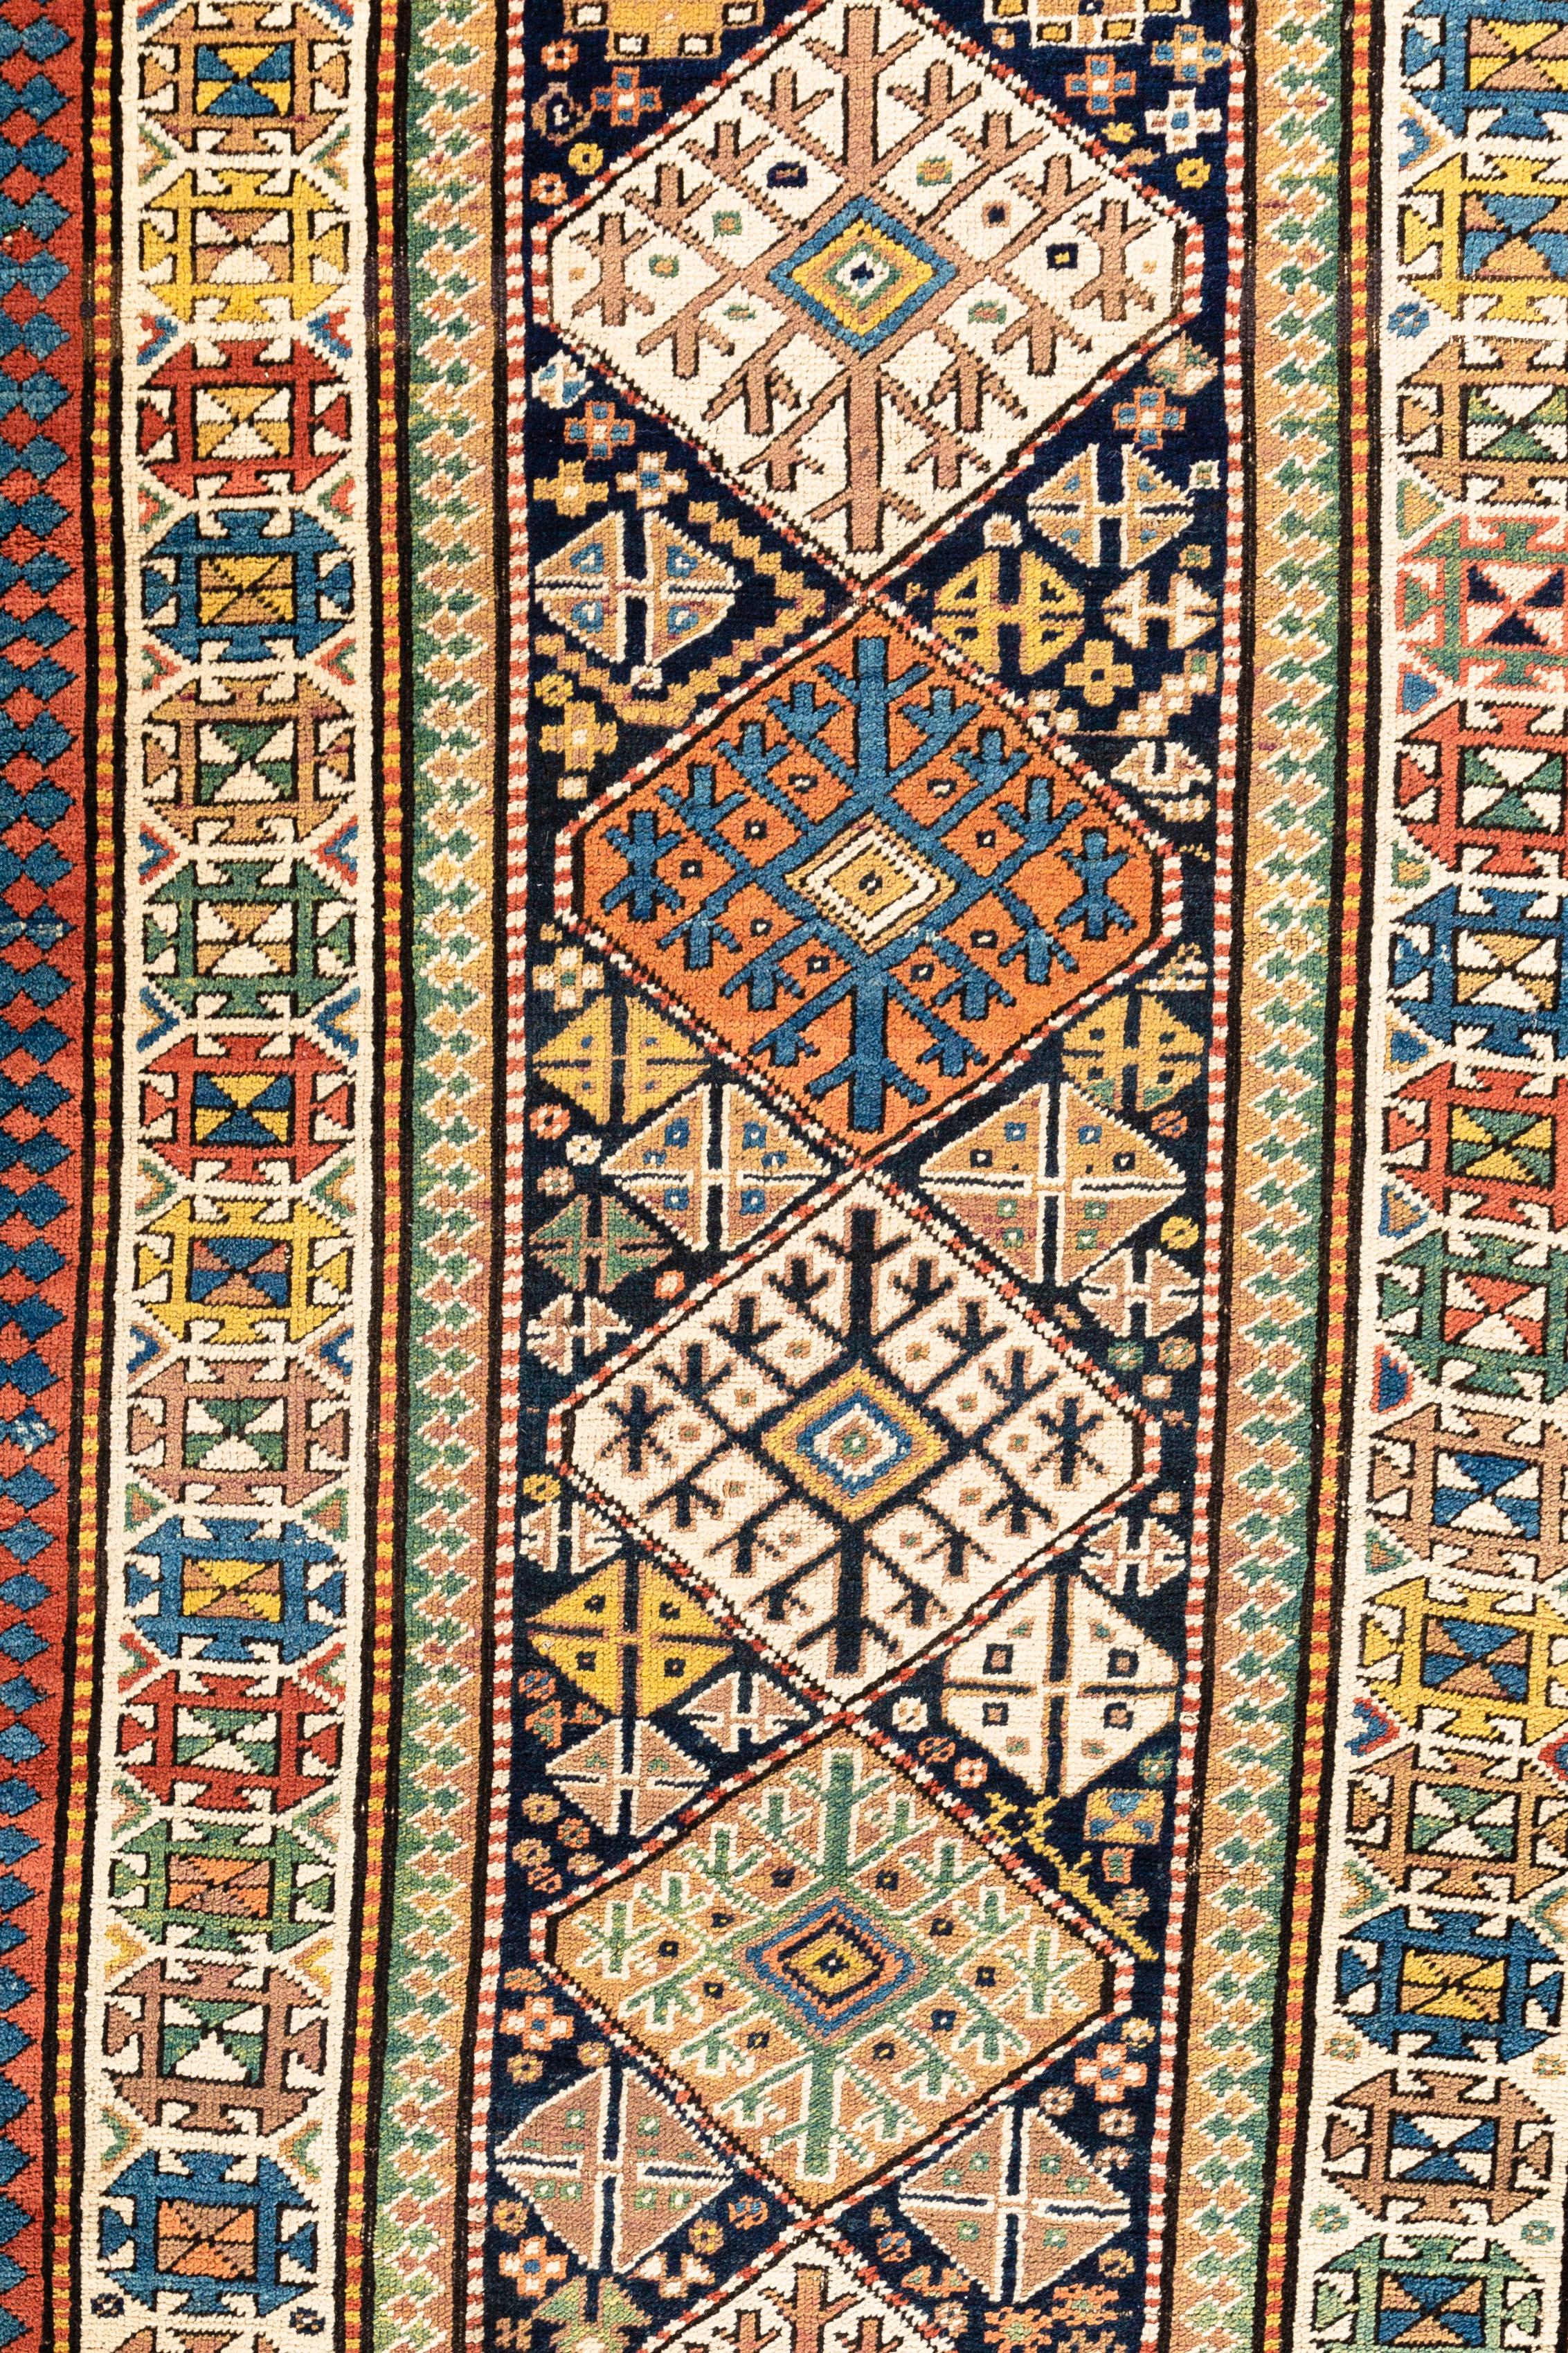 Ein antiker handgewebter kaukasischer Teppich aus Schirwan, um 1880. Diese Arten von antiken kaukasischen Teppichen wurden im östlichen Teil der Region gewebt, meist entlang der Westküste des Kaspischen Meeres, und zeigen im Design den ethnischen